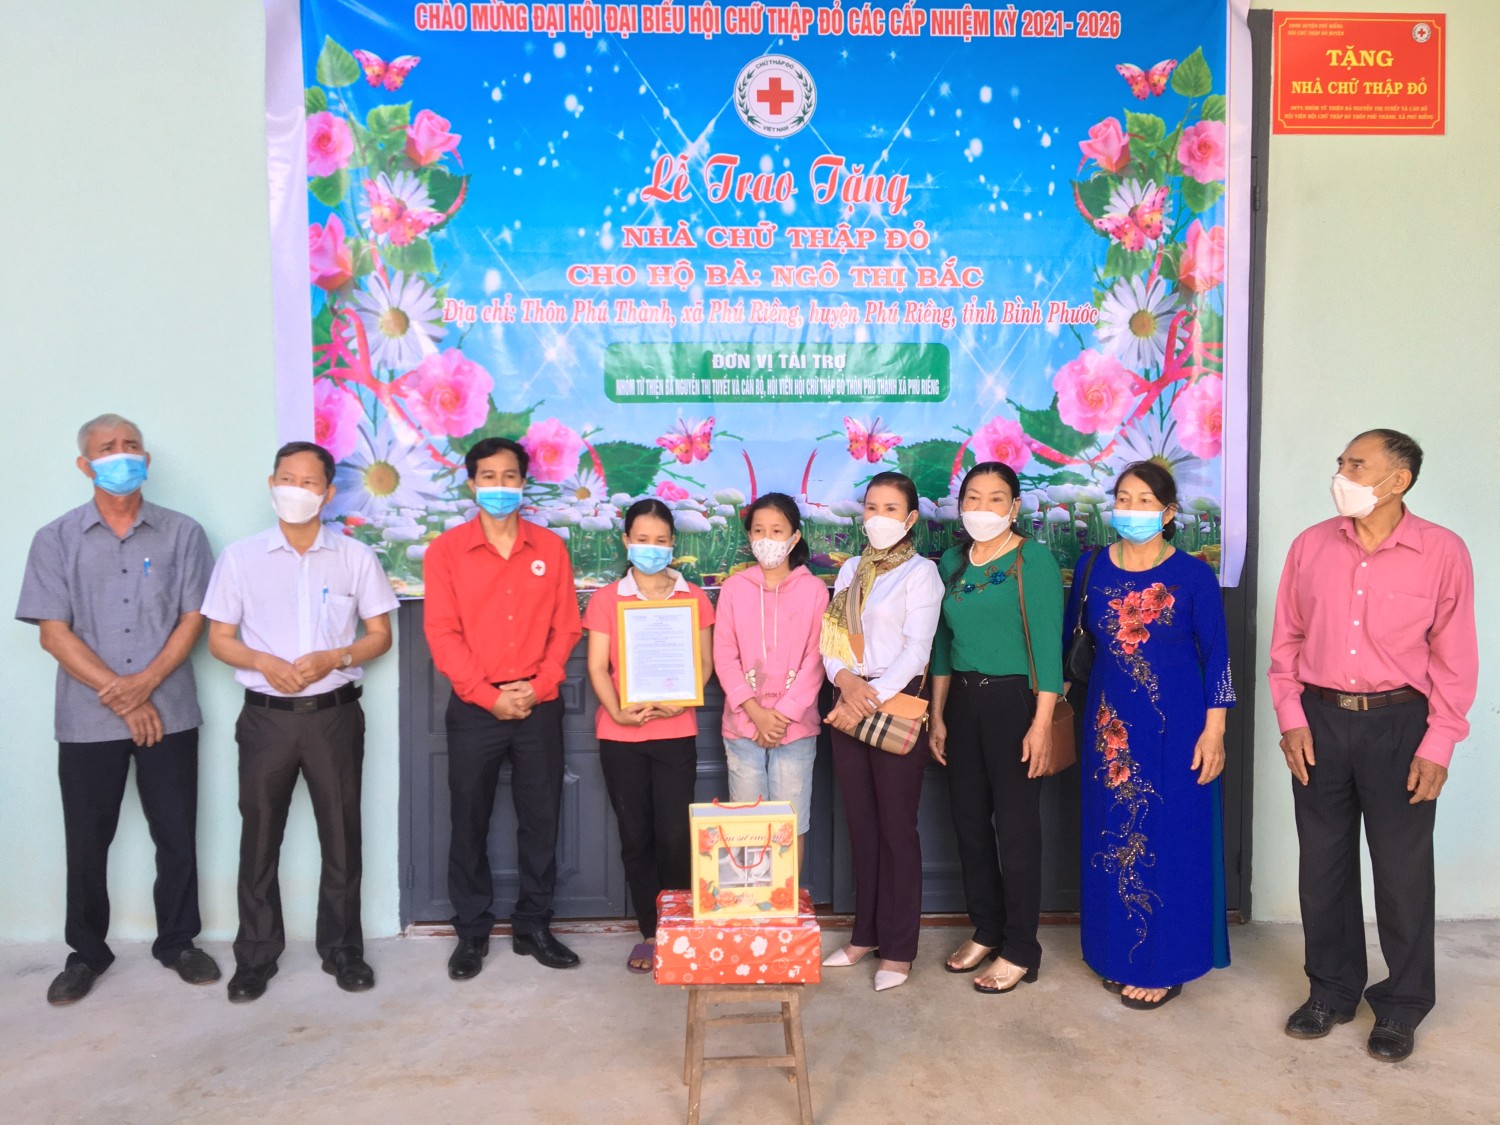 Phú Riềng trao tặng nhà Chữ thập đỏ cho chị Ngô Thị Bắc